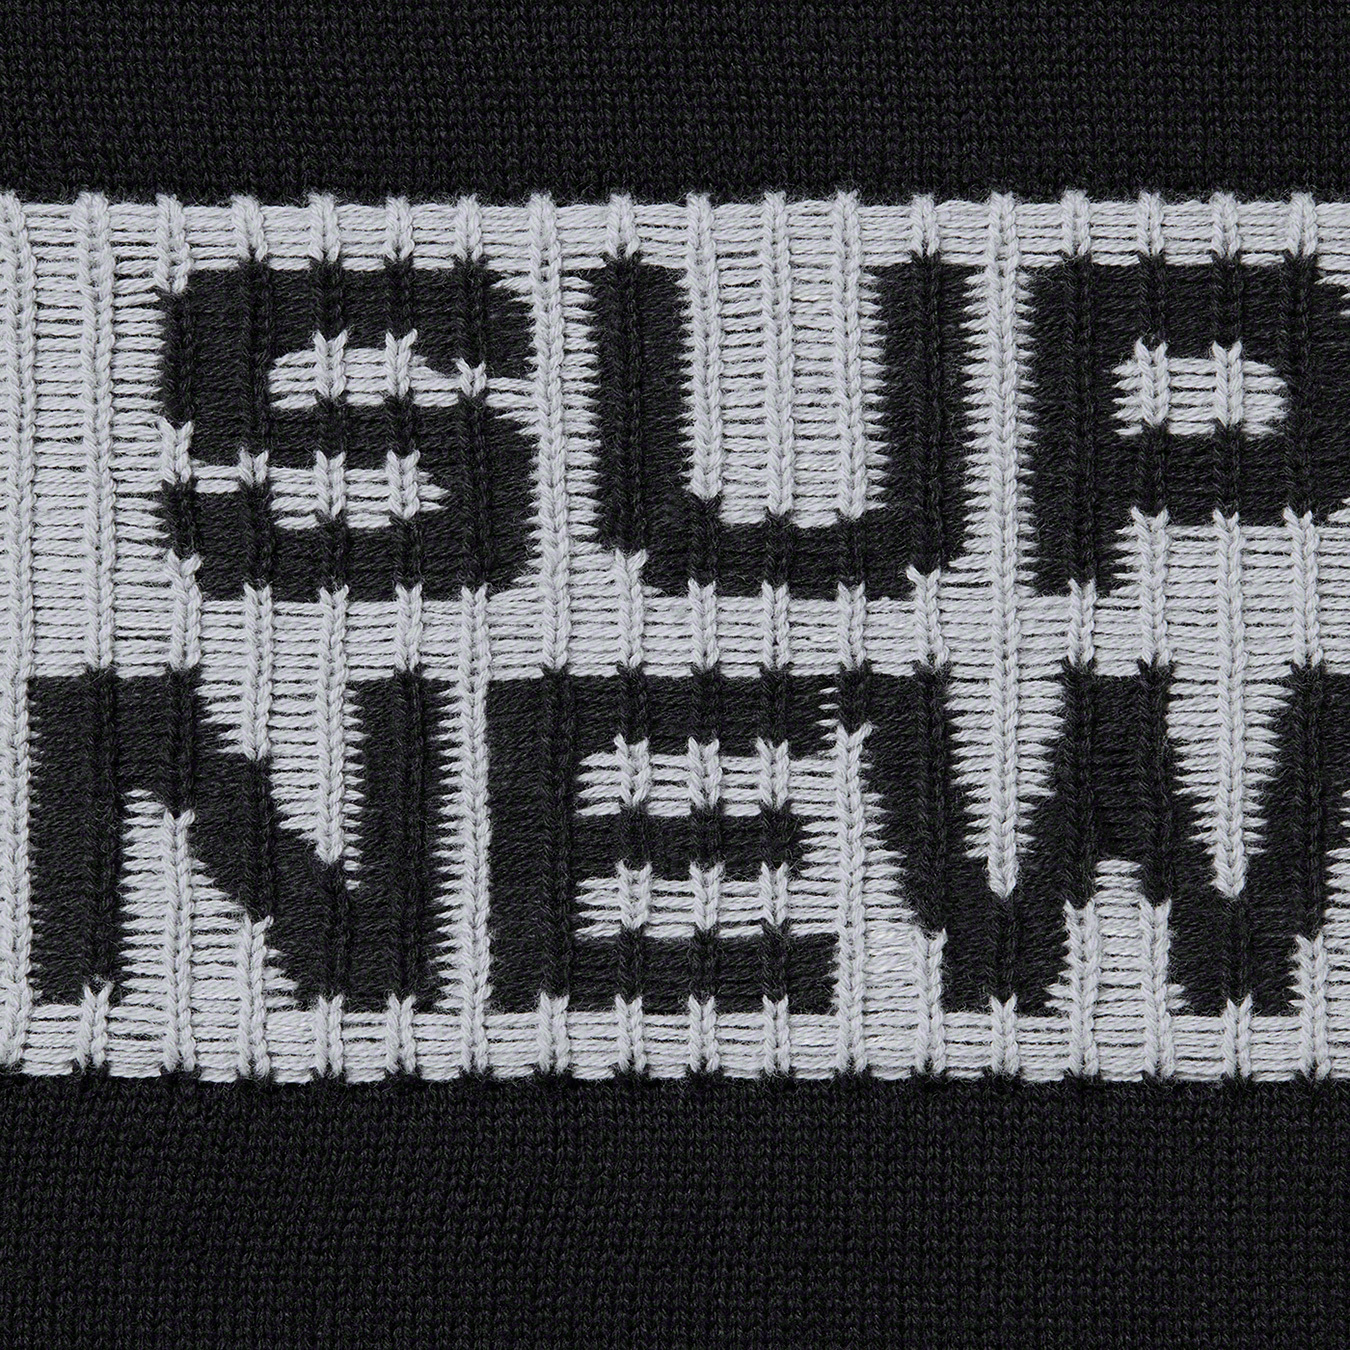 Supreme 2-Tone Sweater